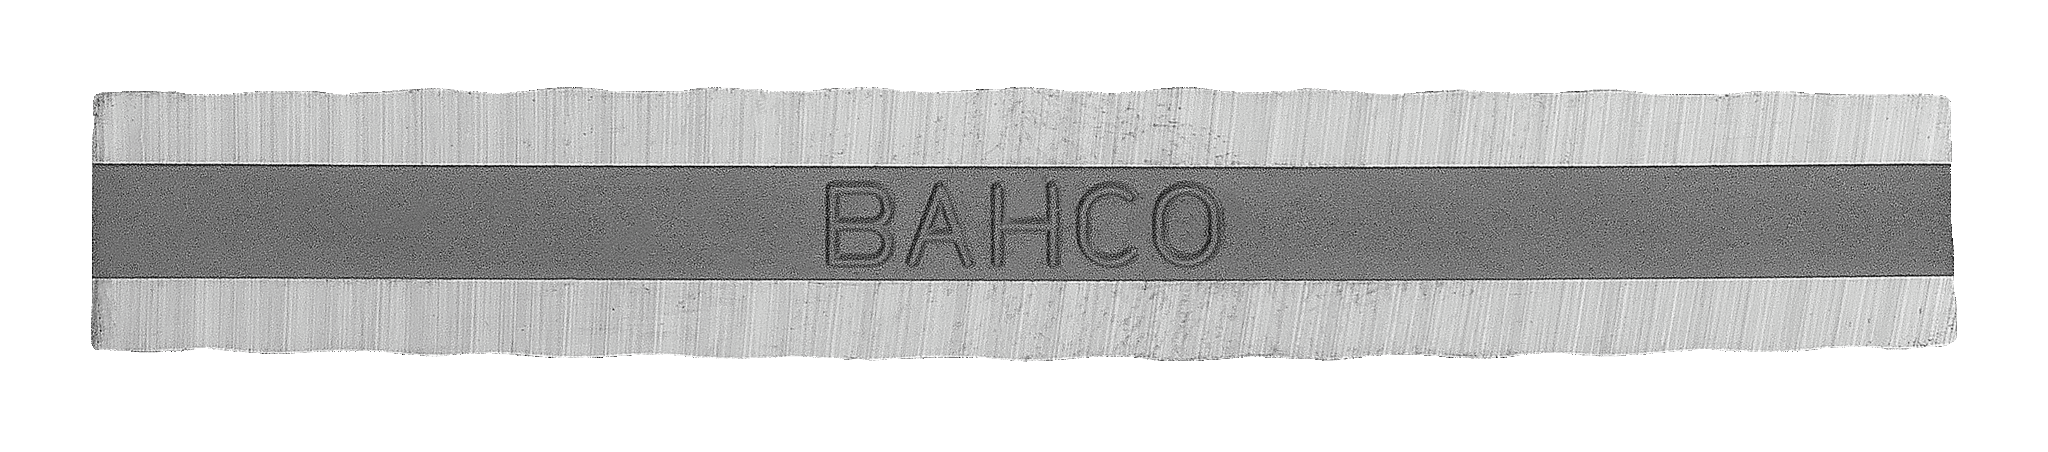 Náhradní břit 850-1 škrabky BAHCO 650